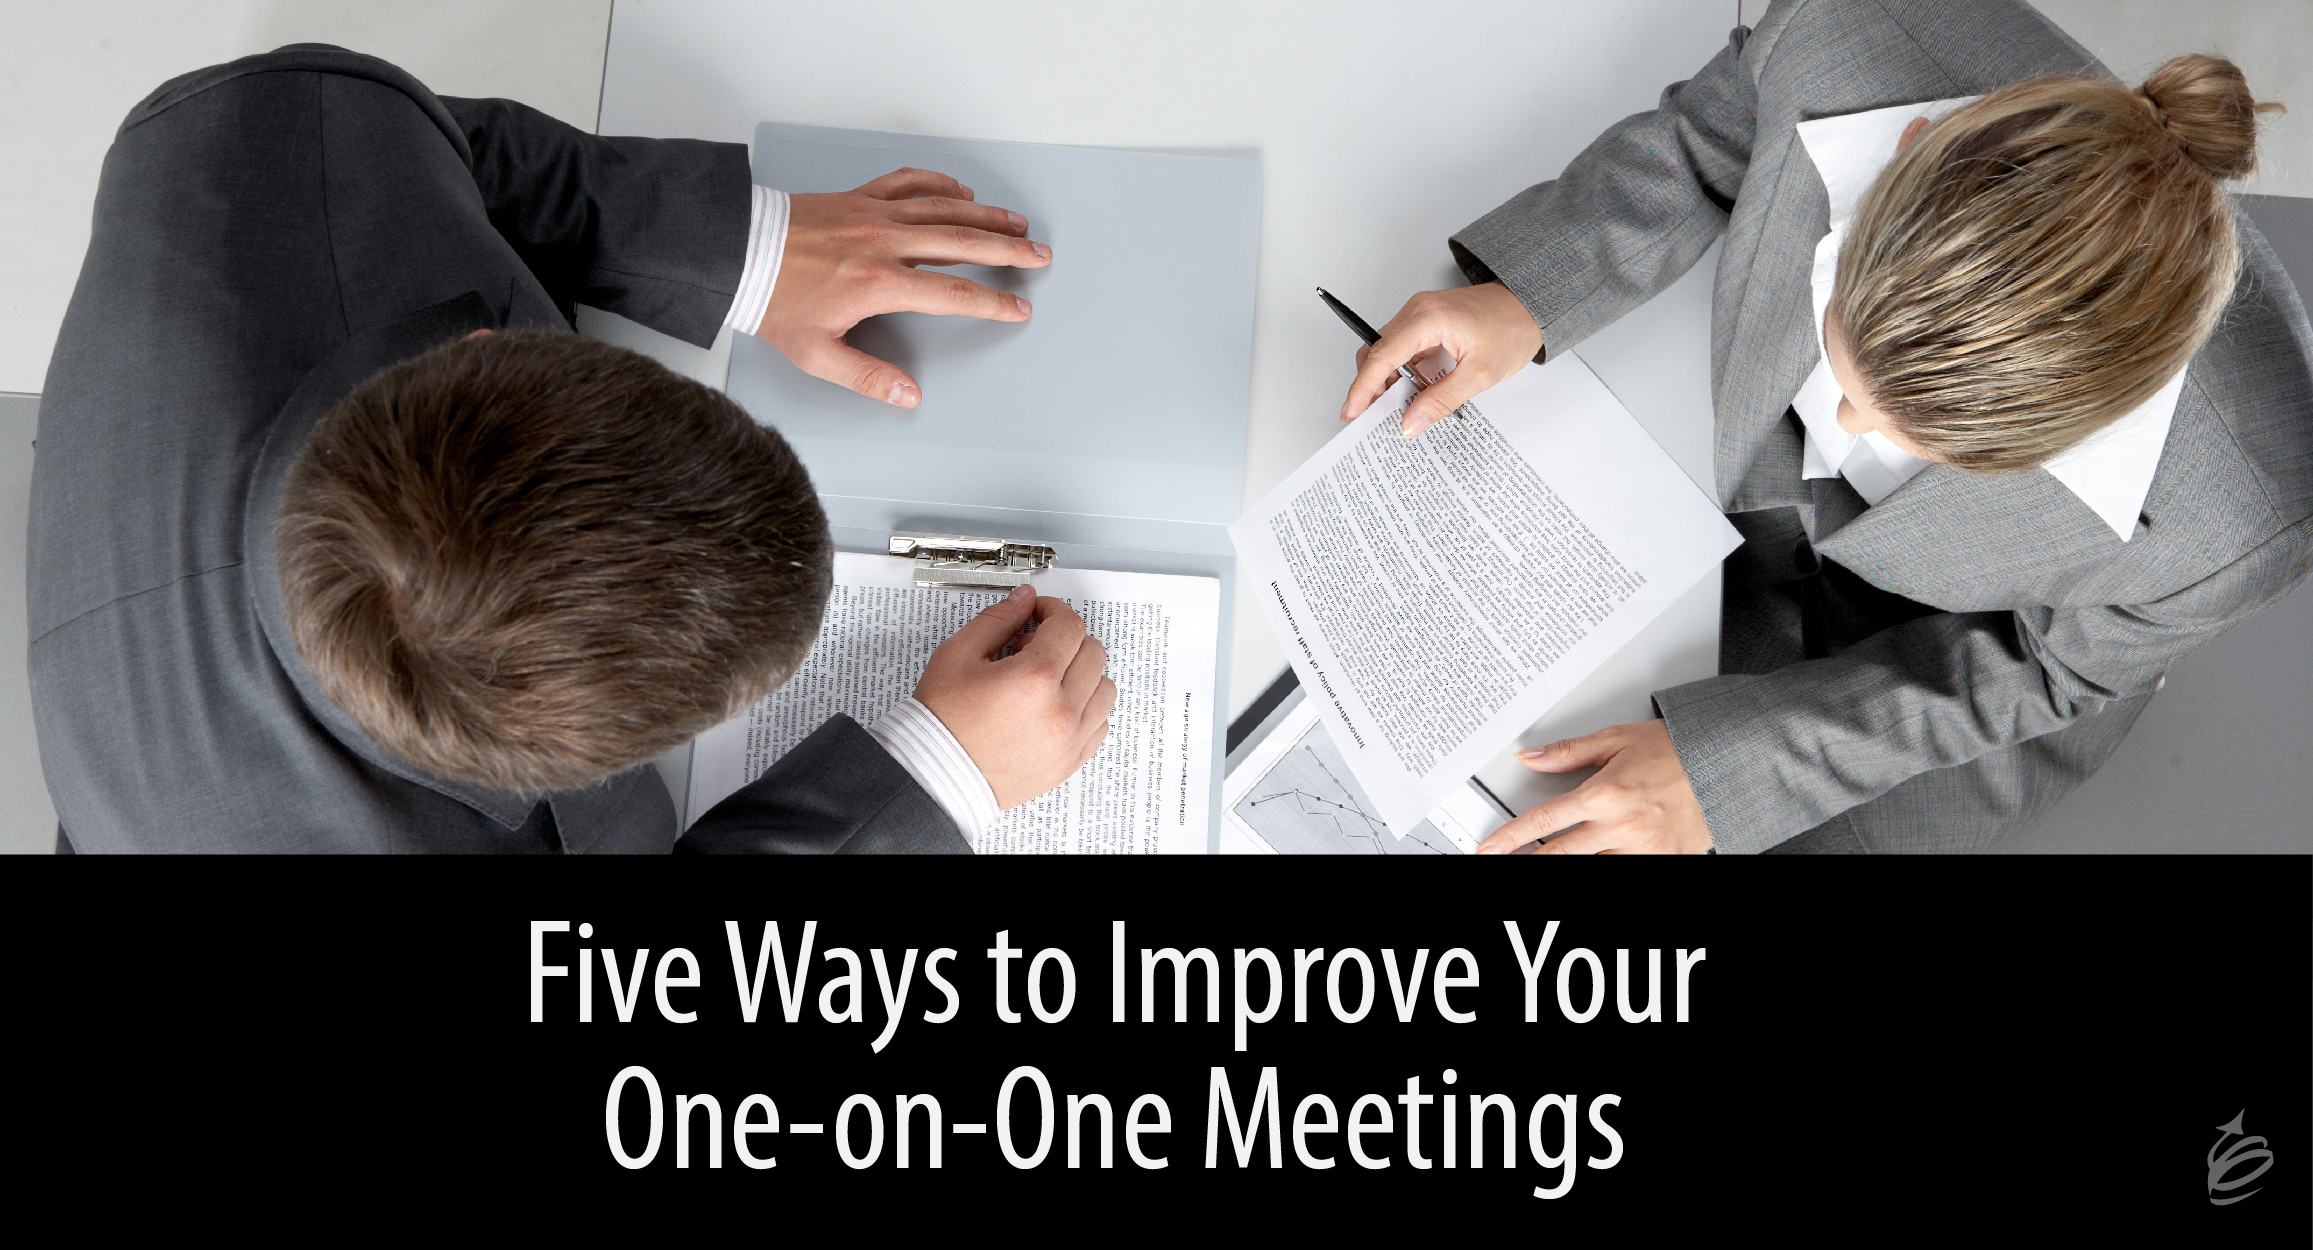 Keys to One-on-one Meetings